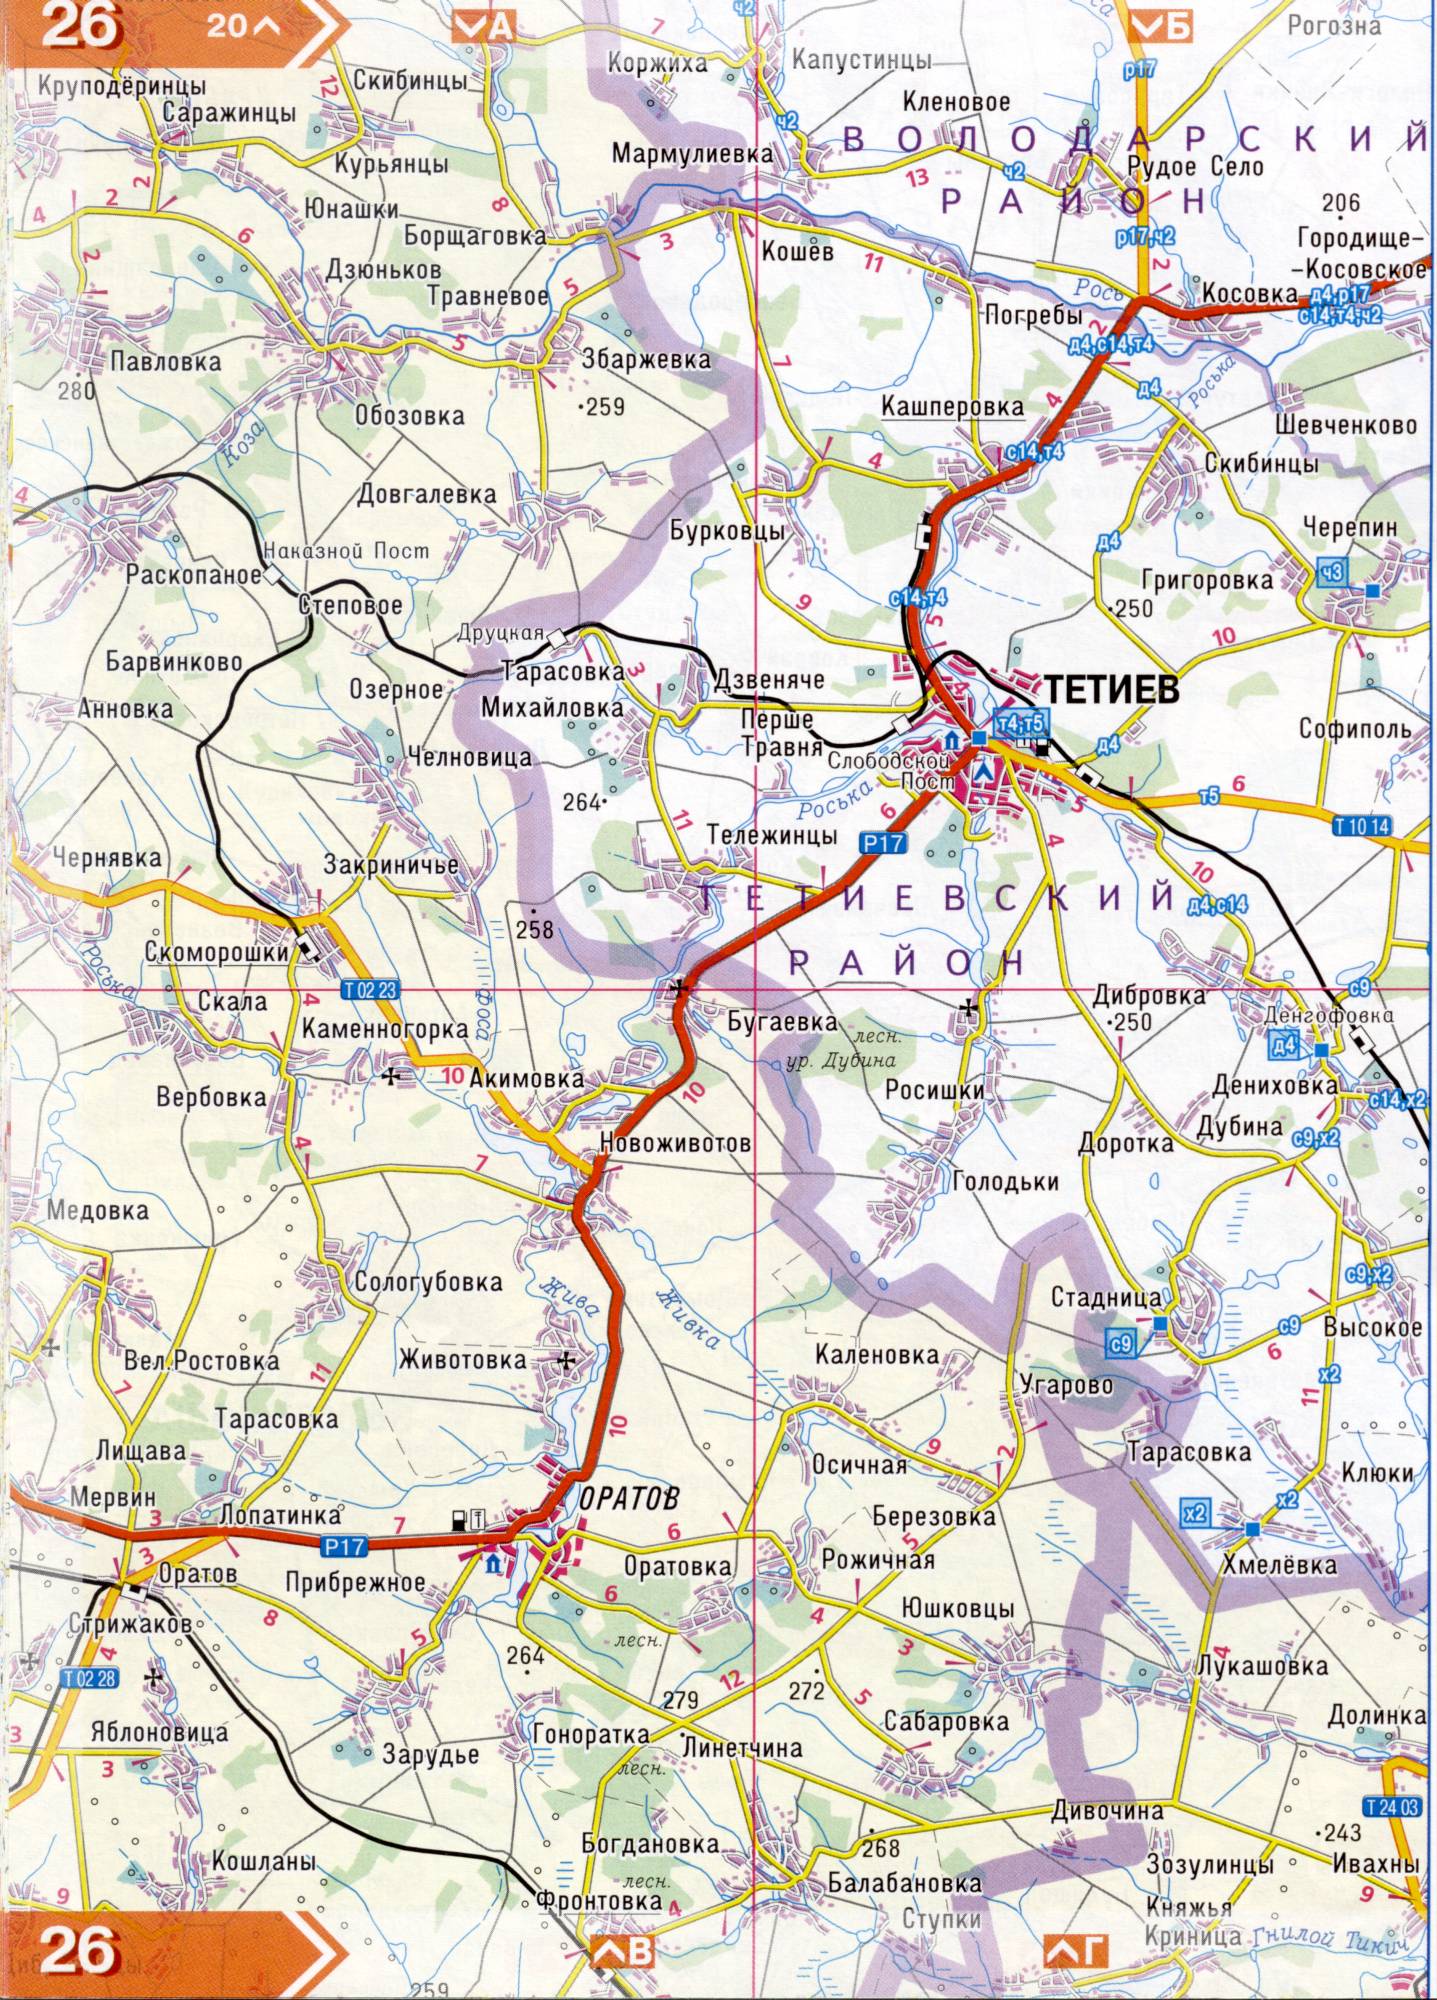 Atlas von der Region Kiew. Eine detaillierte Karte der Region Kiew von dem Atlas von Autobahnen. Kiewer Gebiet auf einer detaillierten Karte Maßstab 1cm = 3km. Frei, A5 - Tetiev